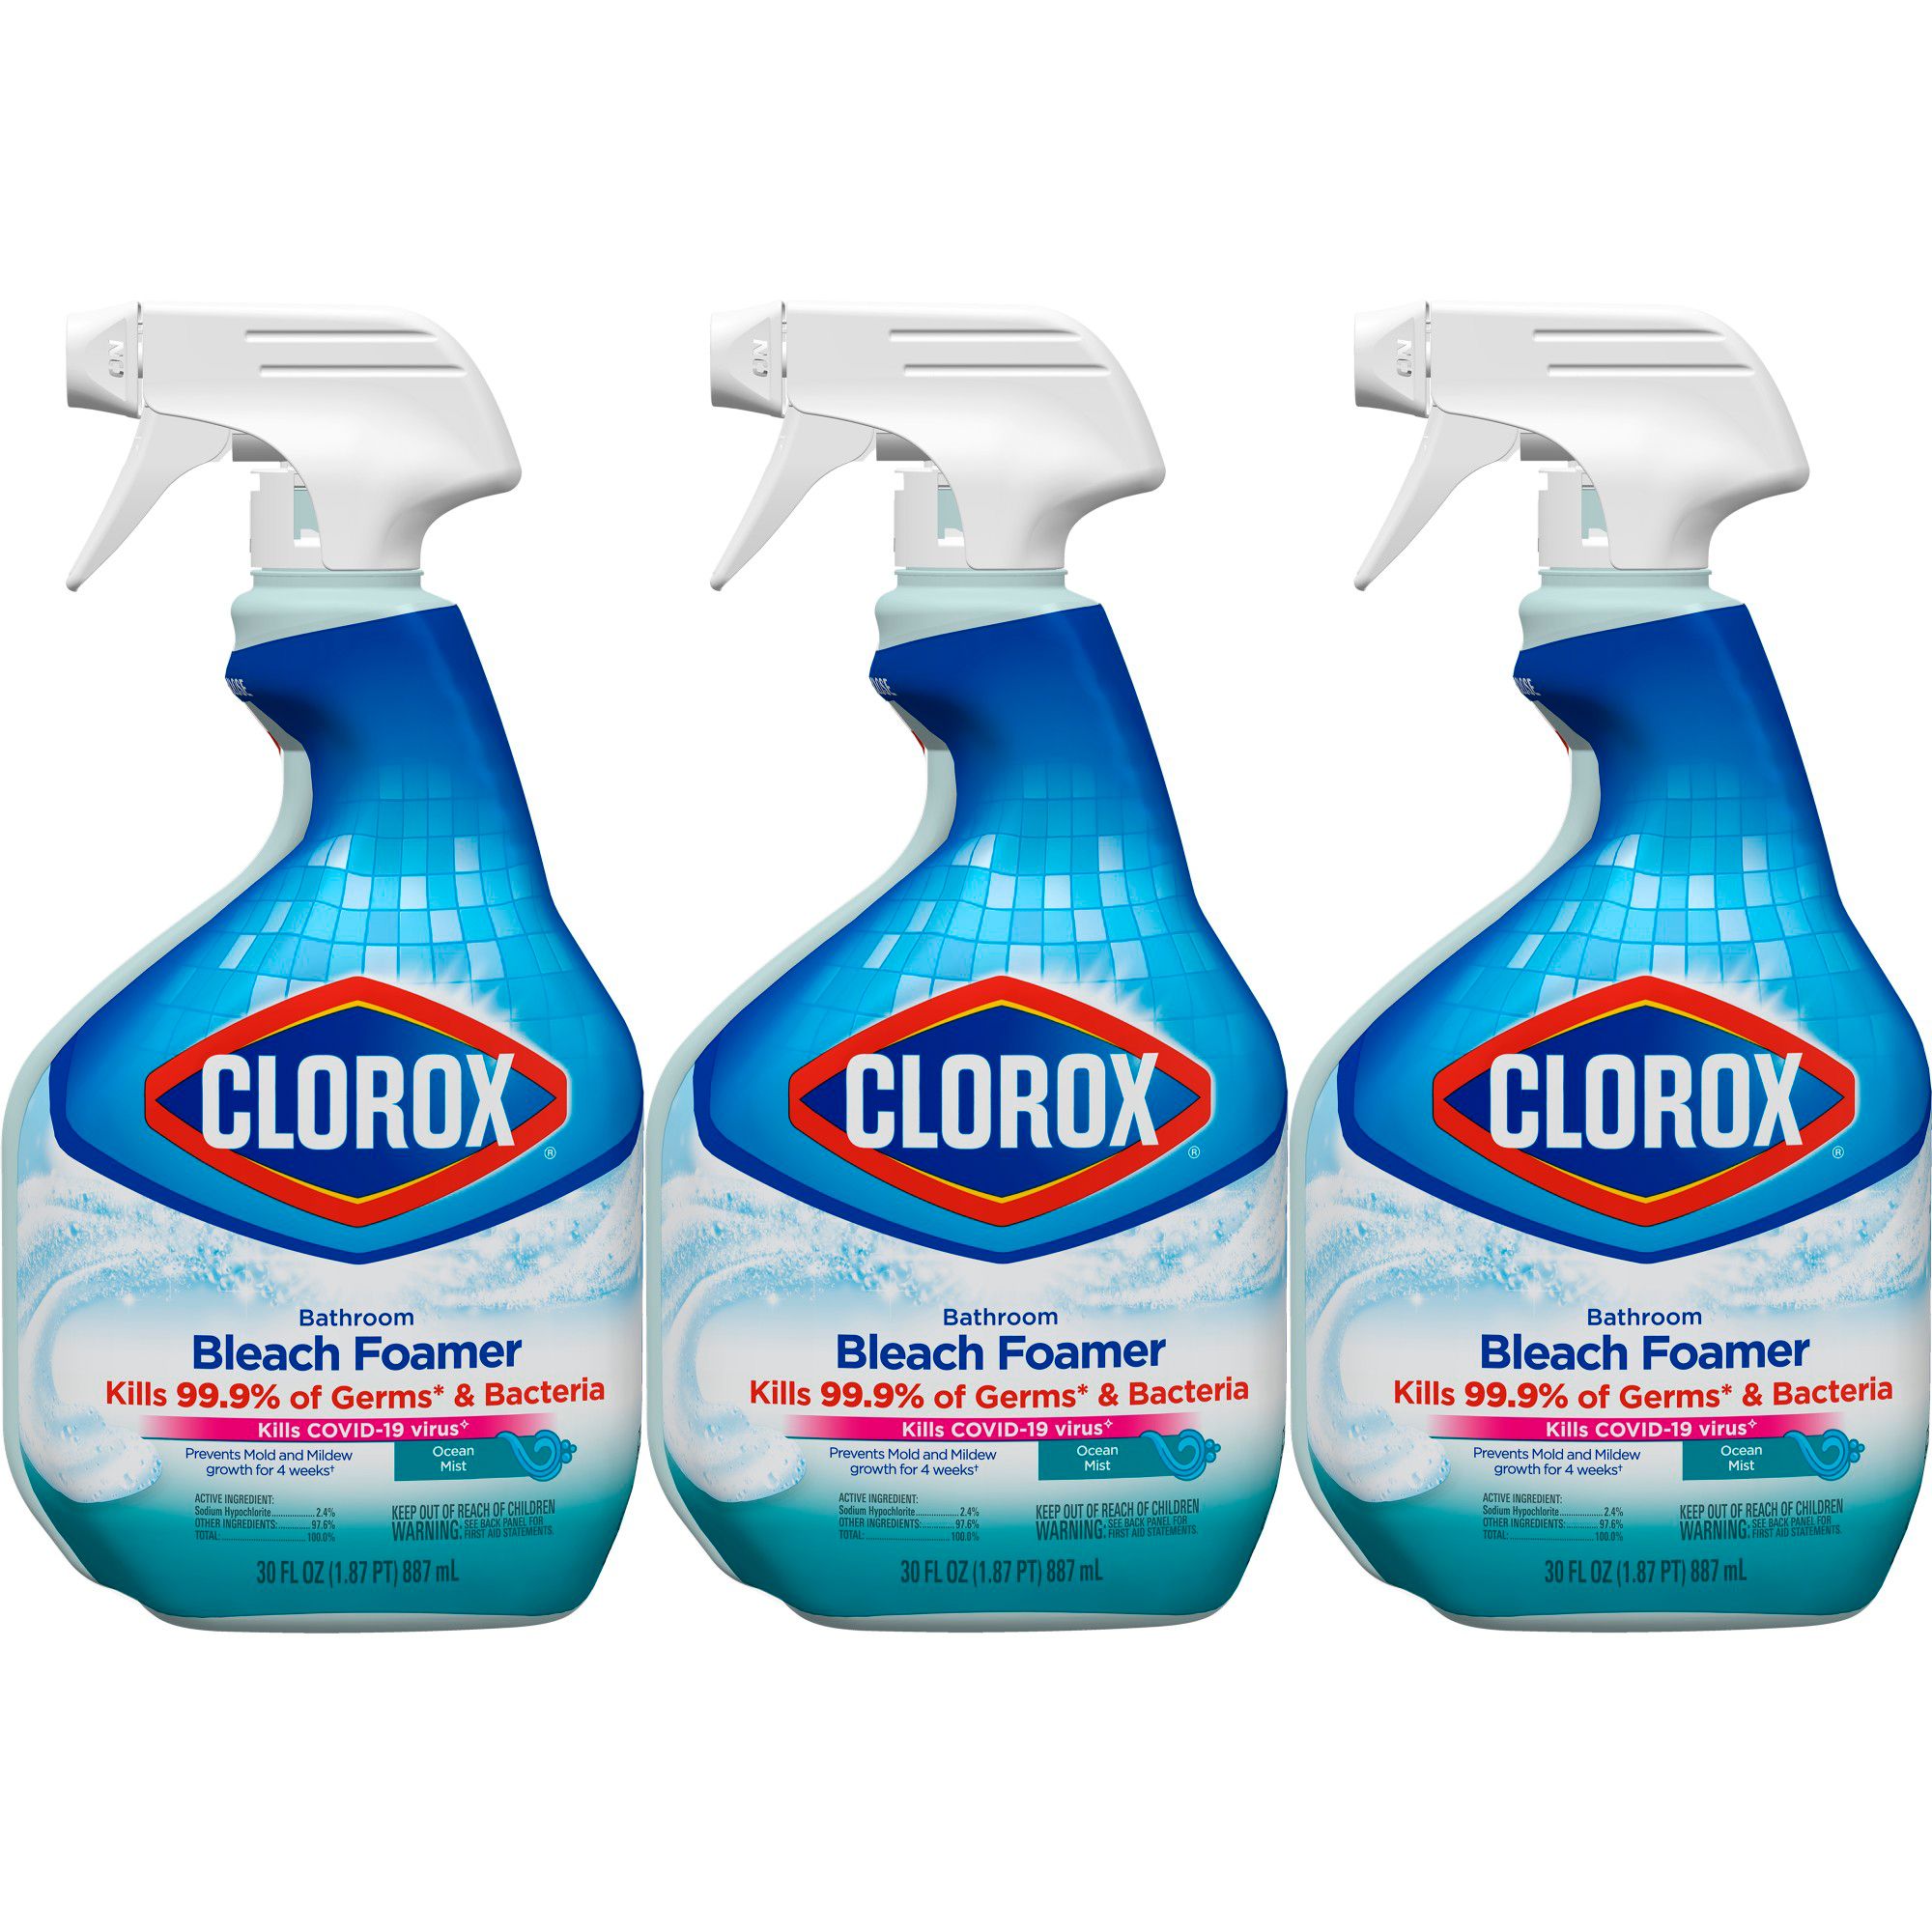 Clorox Toilet Bowl Cleaner with Bleach, Rain Clean, 6 pk./24 oz.